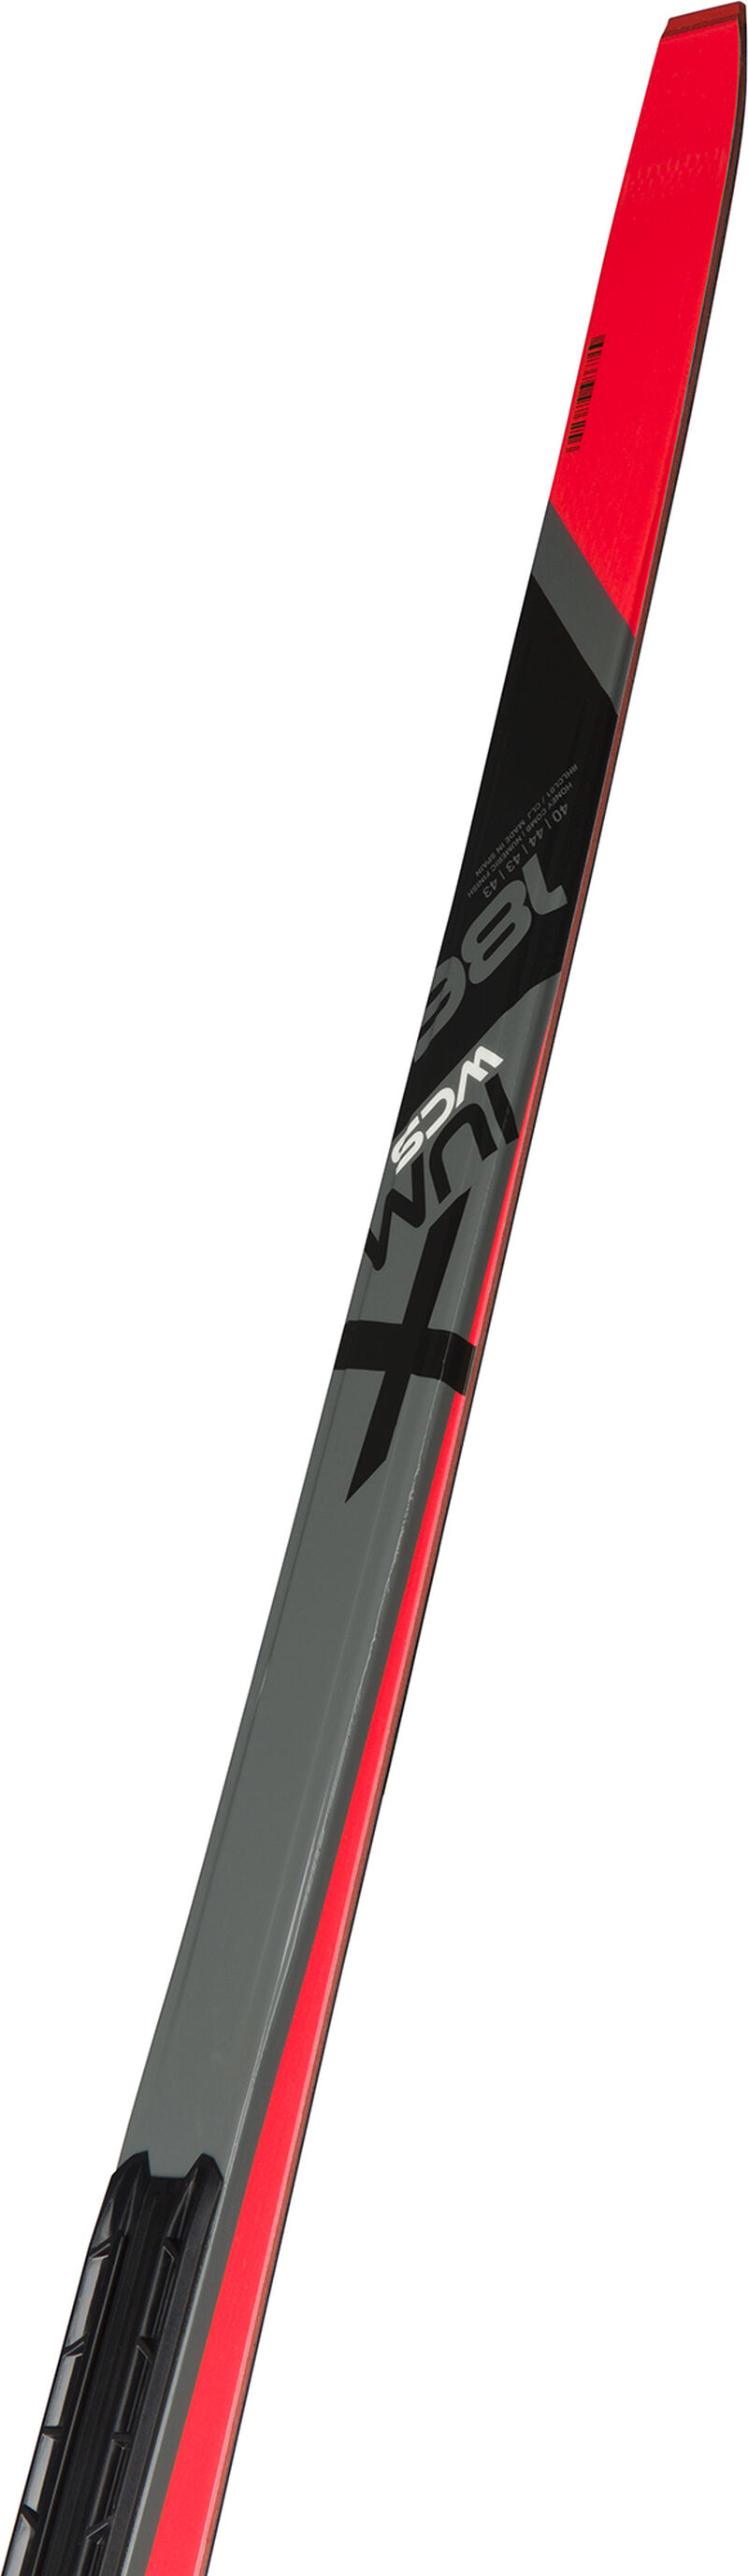 Rossignol Unisex Nordic Racing Skis X-Ium Skating Wcs-S2 MEDIUM multicolor